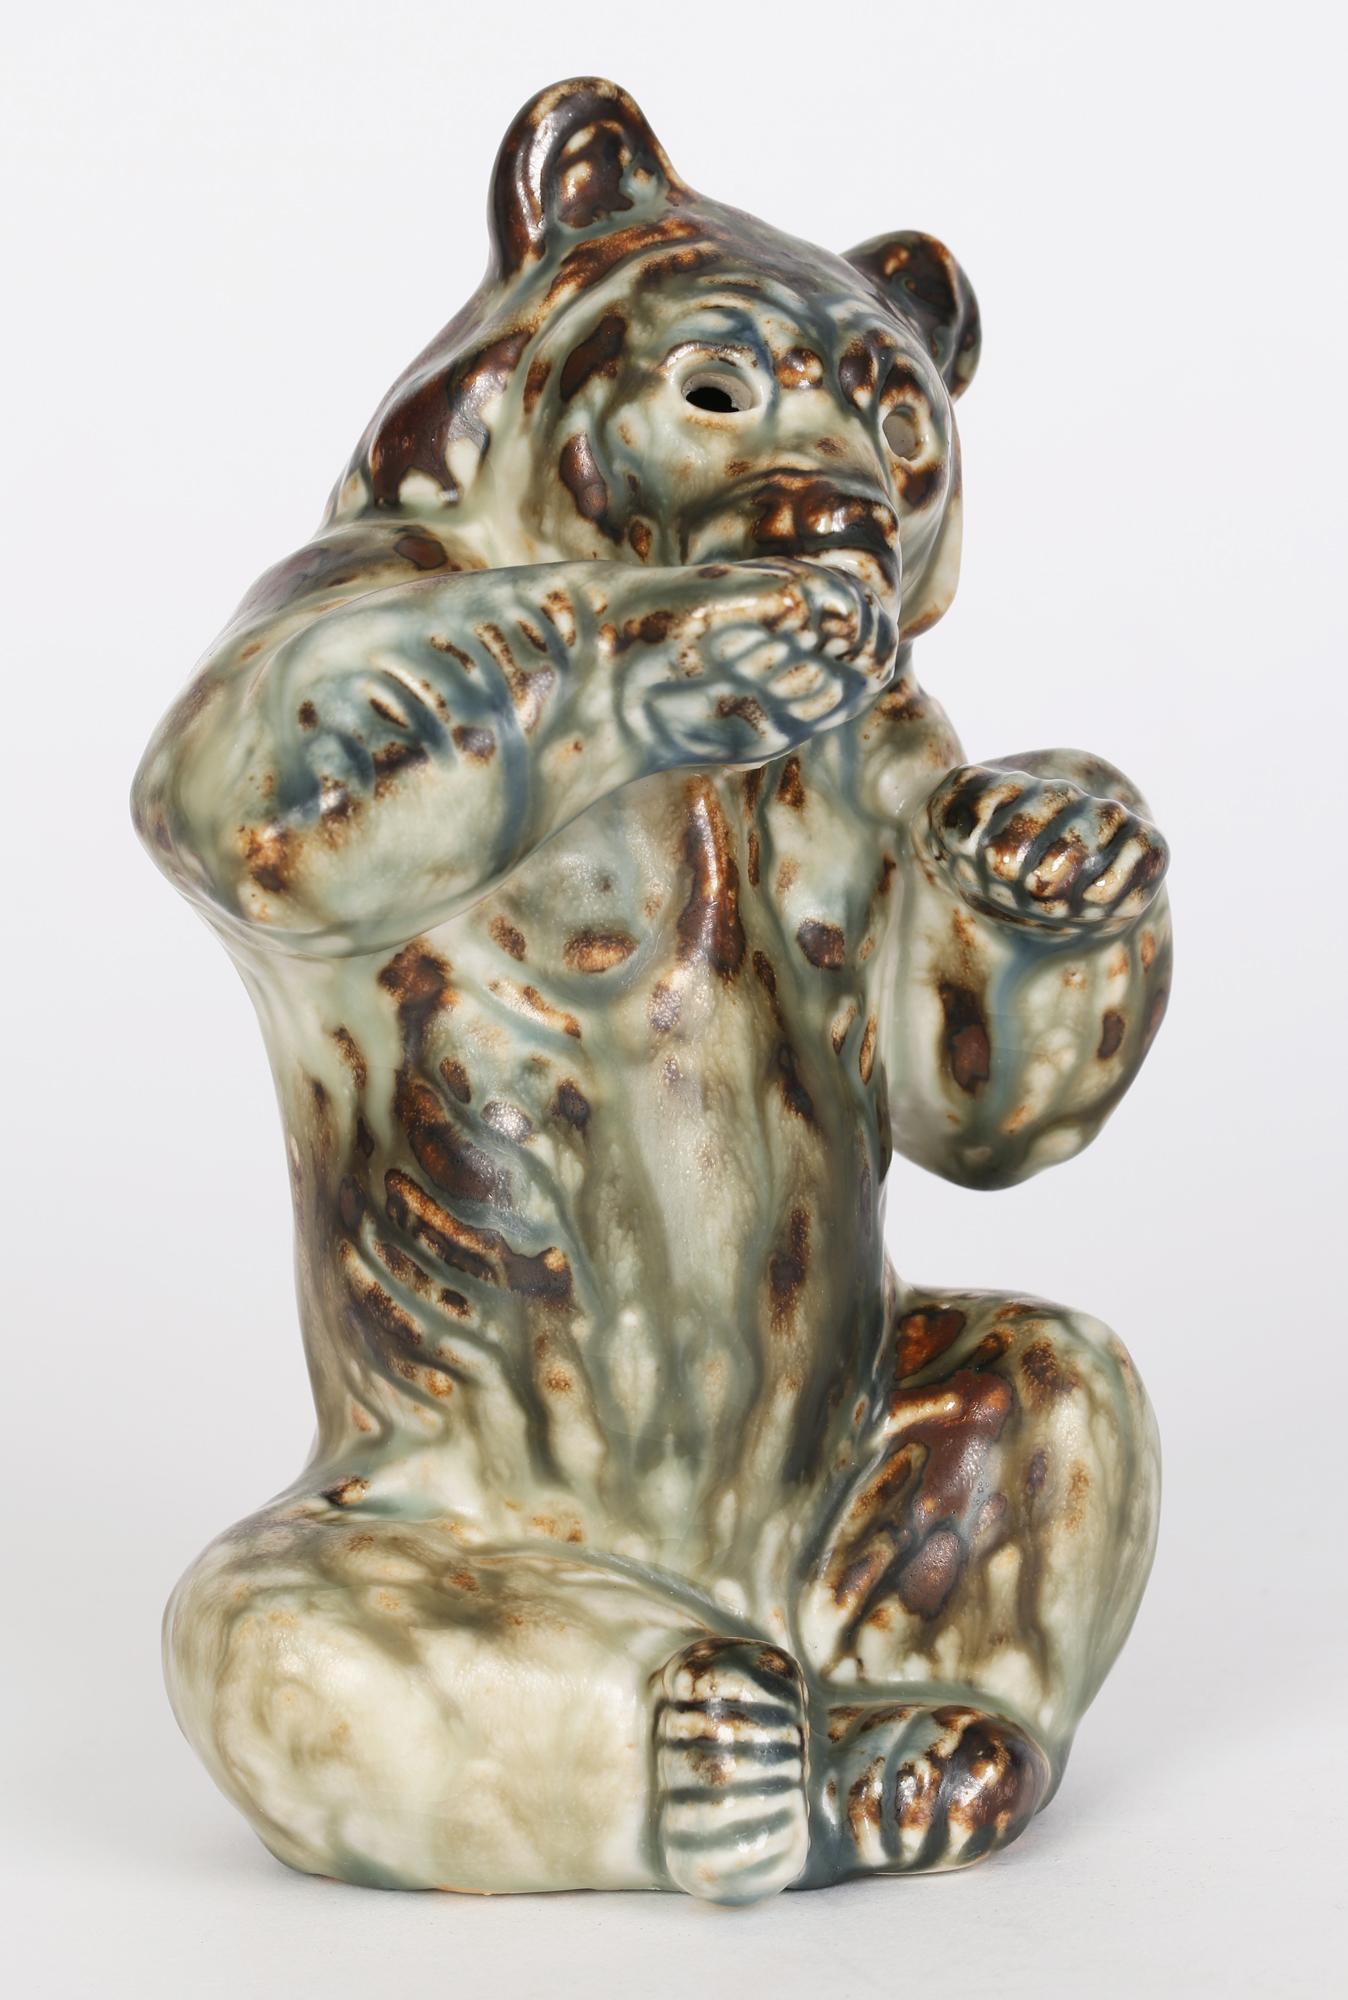 Une étonnante figure sculpturale en porcelaine de Royal Copenhagen représentant un ours assis, réalisée par le célèbre artiste animalier Khud Kyhn (danois, 1880-1969) et conçue vers 1935. L'ours est modelé en position assise et se lèche la patte